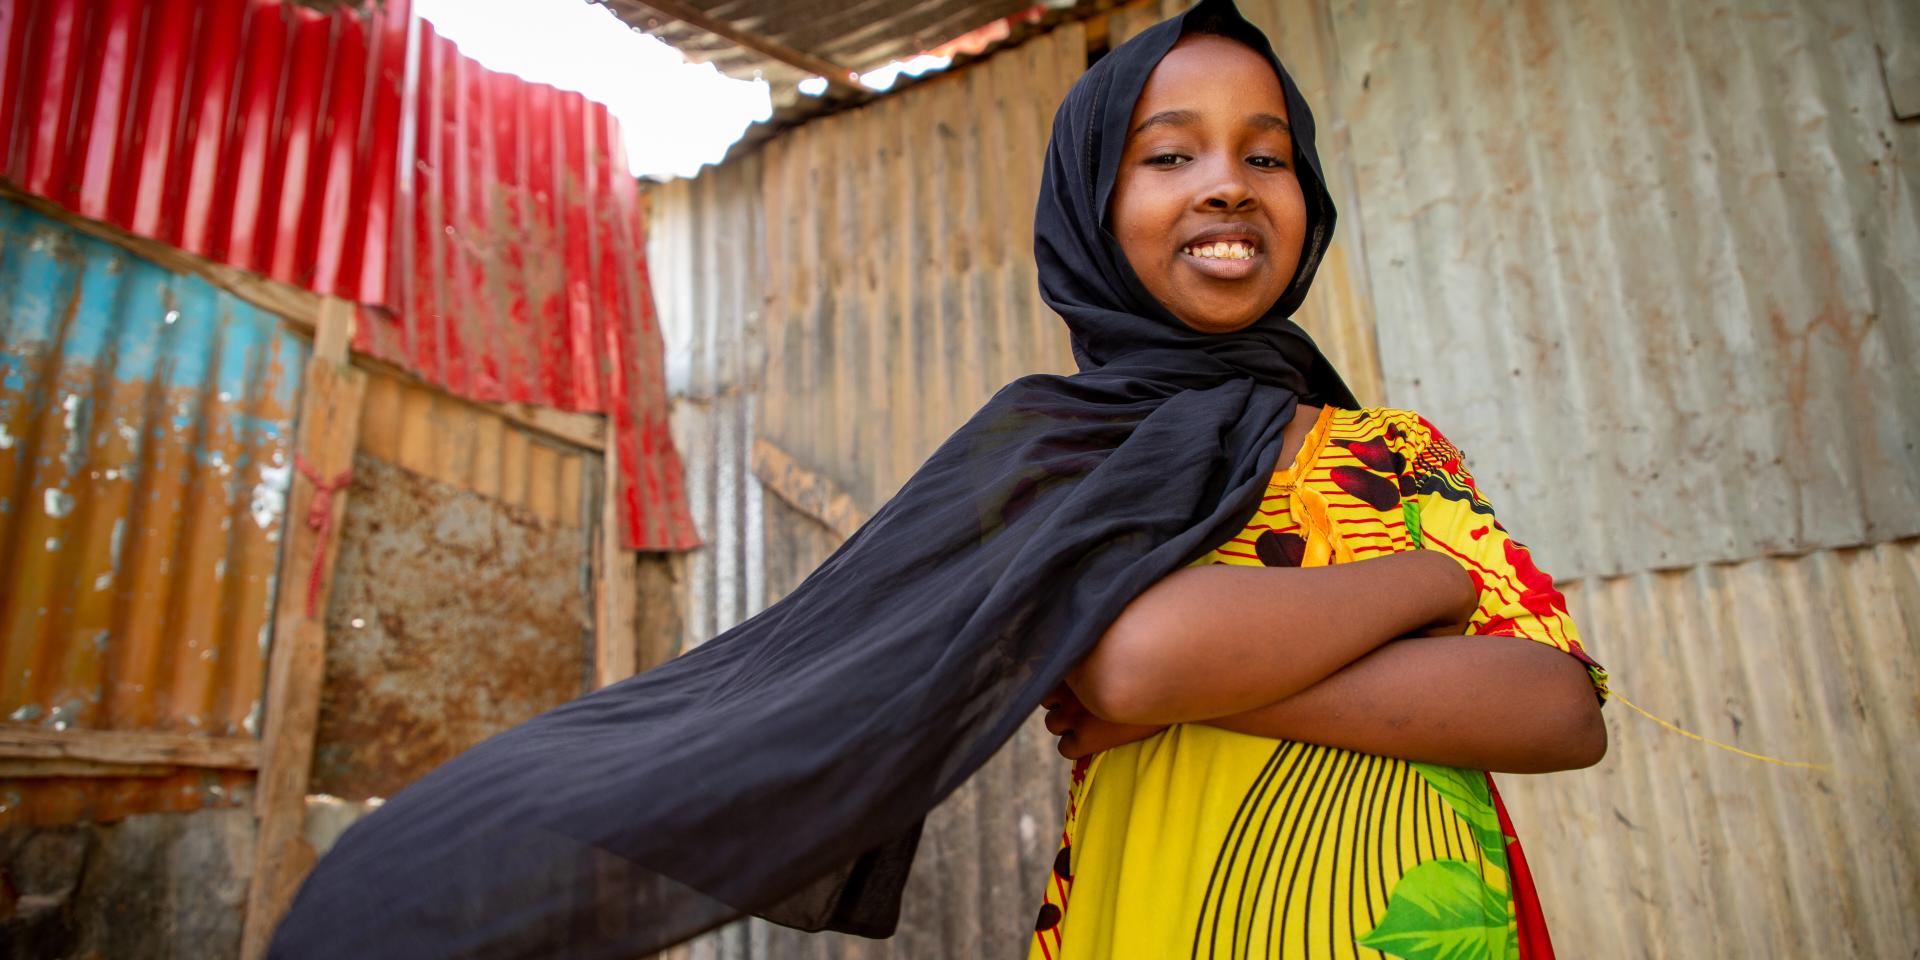 Una bambina di 10 anni sorride nella sua casa nel Puntland, Somalia. La bambina frequenta uno Spazio a Misura di Bambino in un campo realizzato per persone in fuga dalla guerra e dal cambiamento climatico